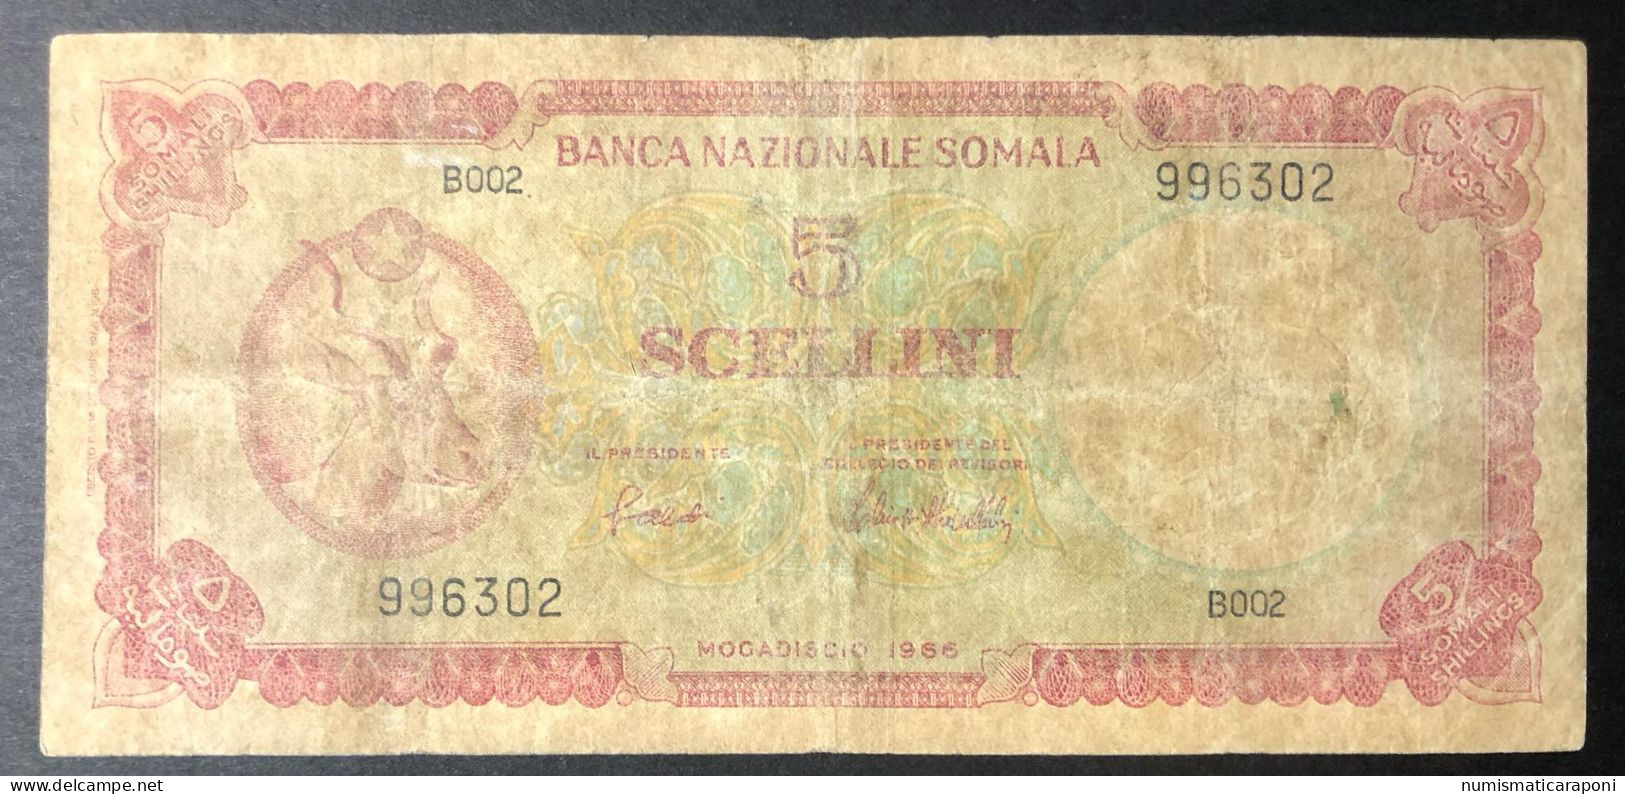 Banca Nazionale Somala 5 Scellini Somali Mogadiscio SOMALIA 5 Scellini 1966 Pick 5 LOTTO 1055 - Somalie